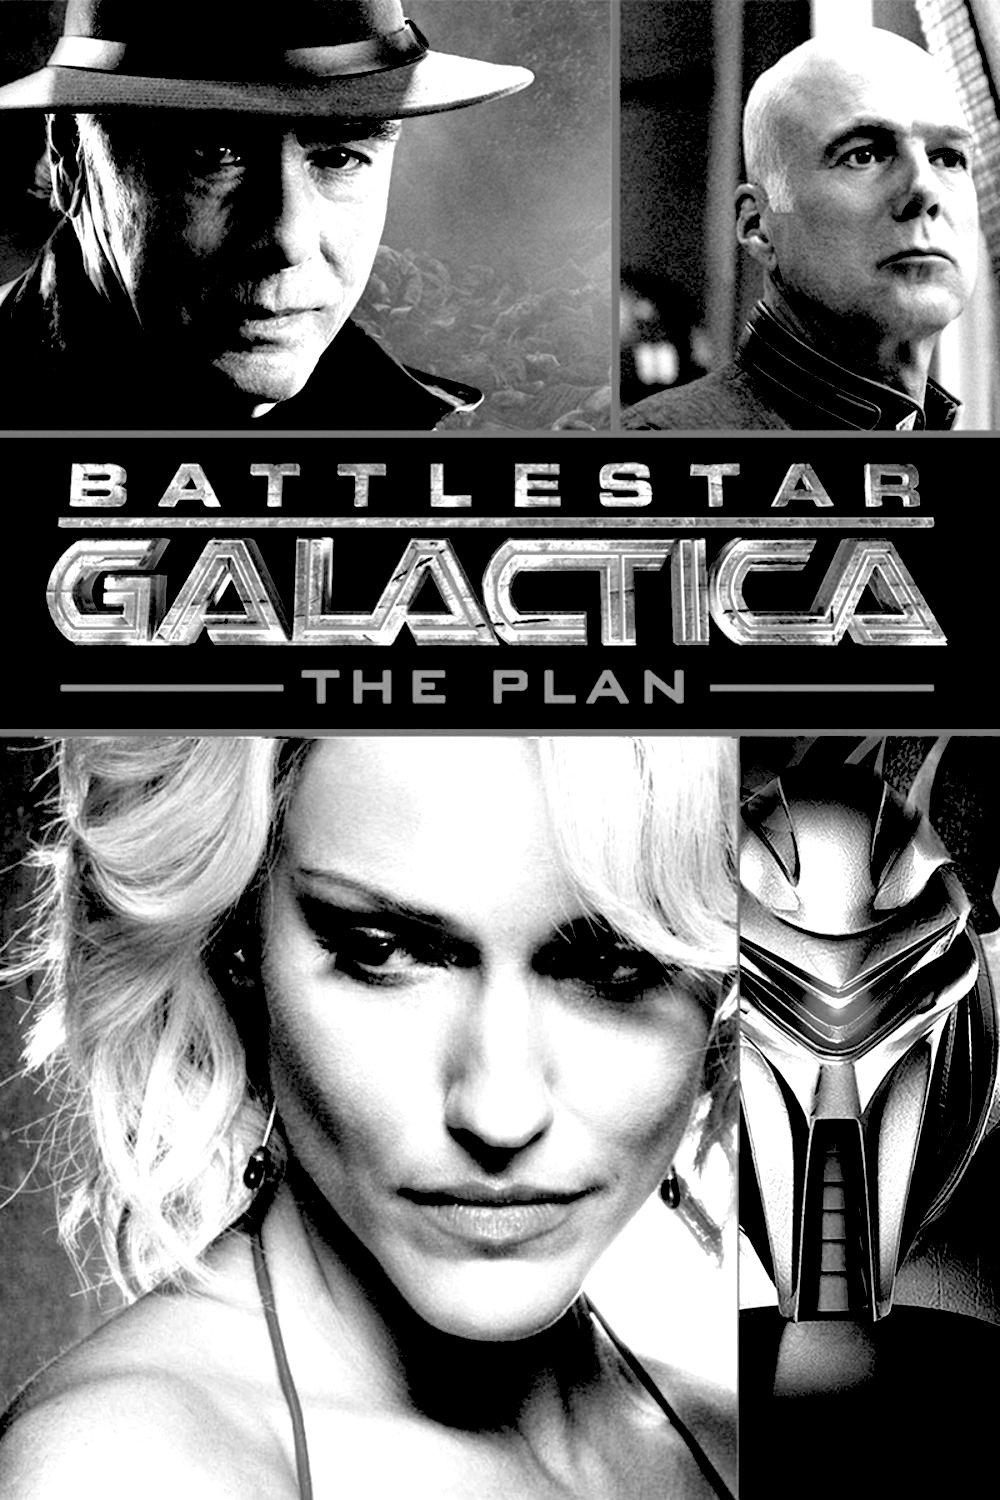 battlestar-galactica-film-score-composer-richard-gibbs.jpg